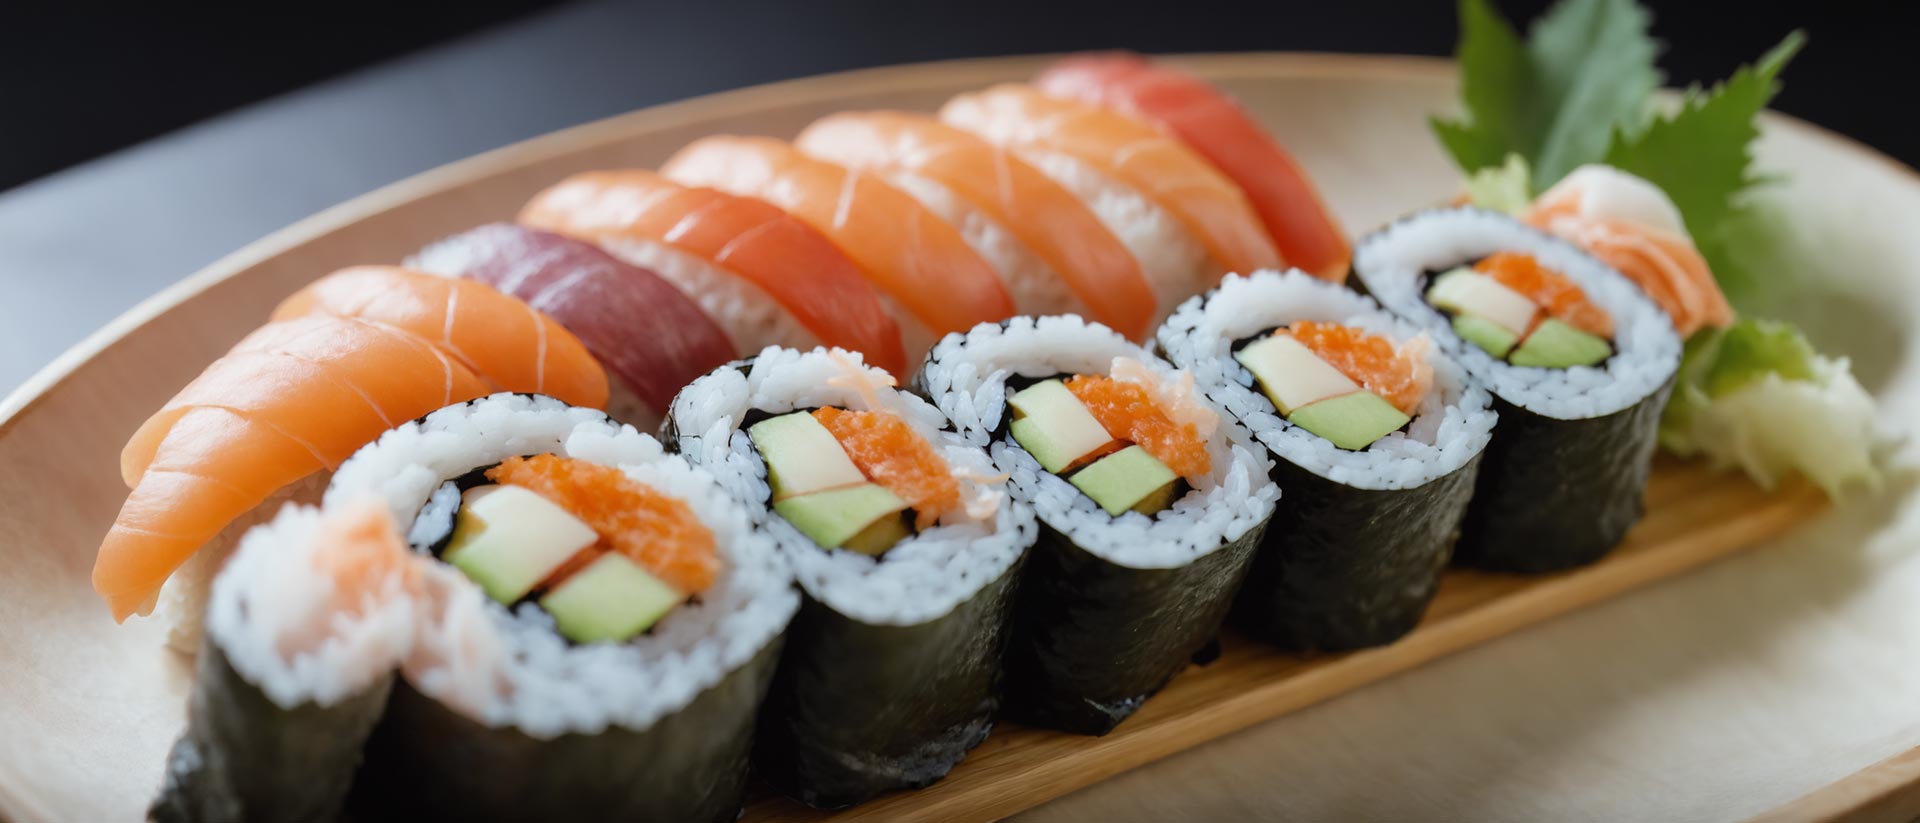 Auswahl an Sushi auf Holzbrett, eine Reihe mit Tang ummantelt, die andere von rohem Fisch getoppt